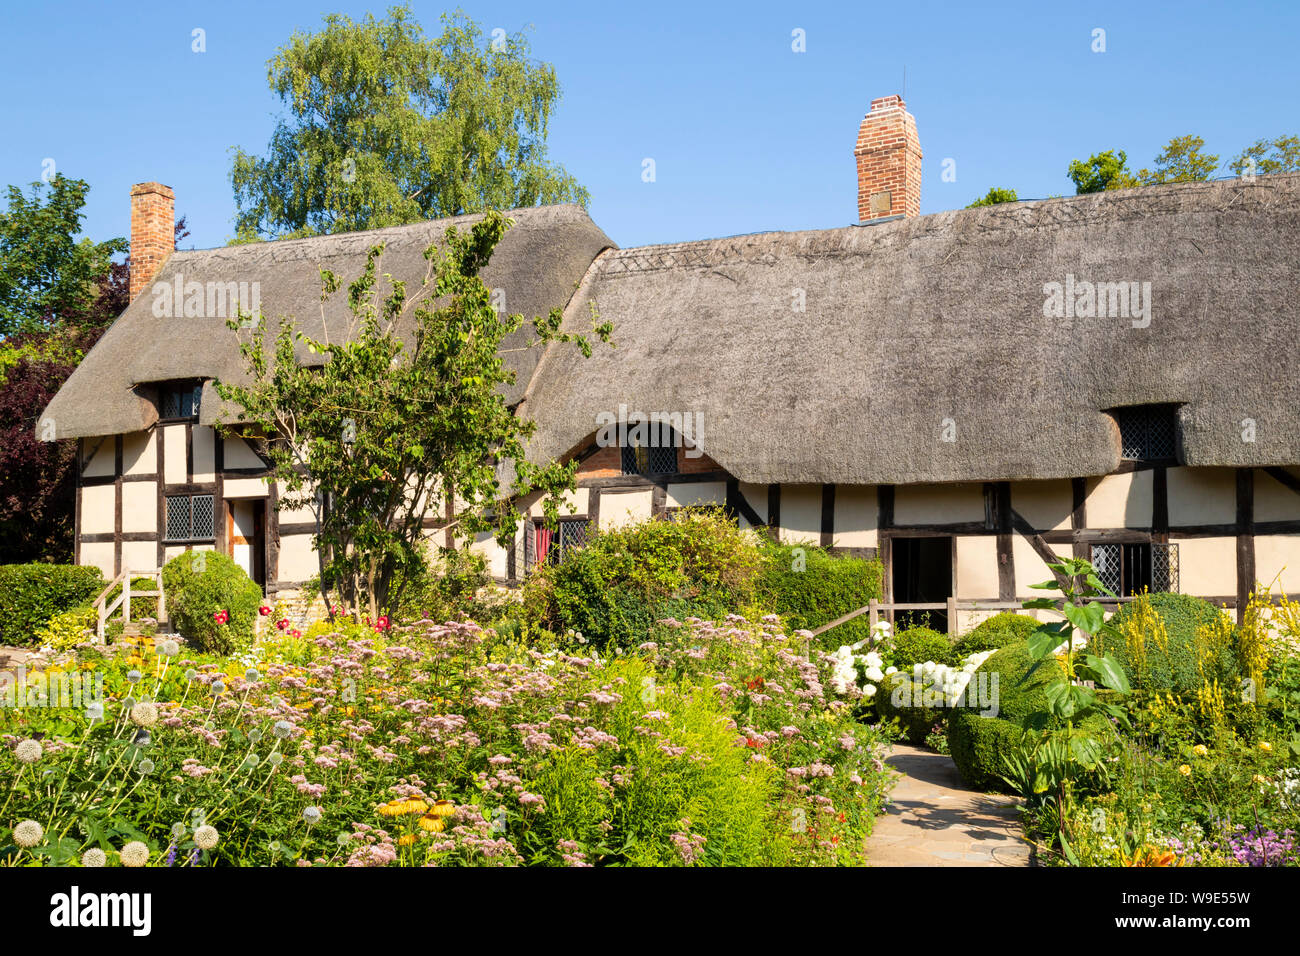 Anne Hathaway's Cottage un cottage con tetto di paglia in un giardino cottage Shottery vicino a Stratford upon Avon Warwickshire England Regno Unito GB Europa Foto Stock